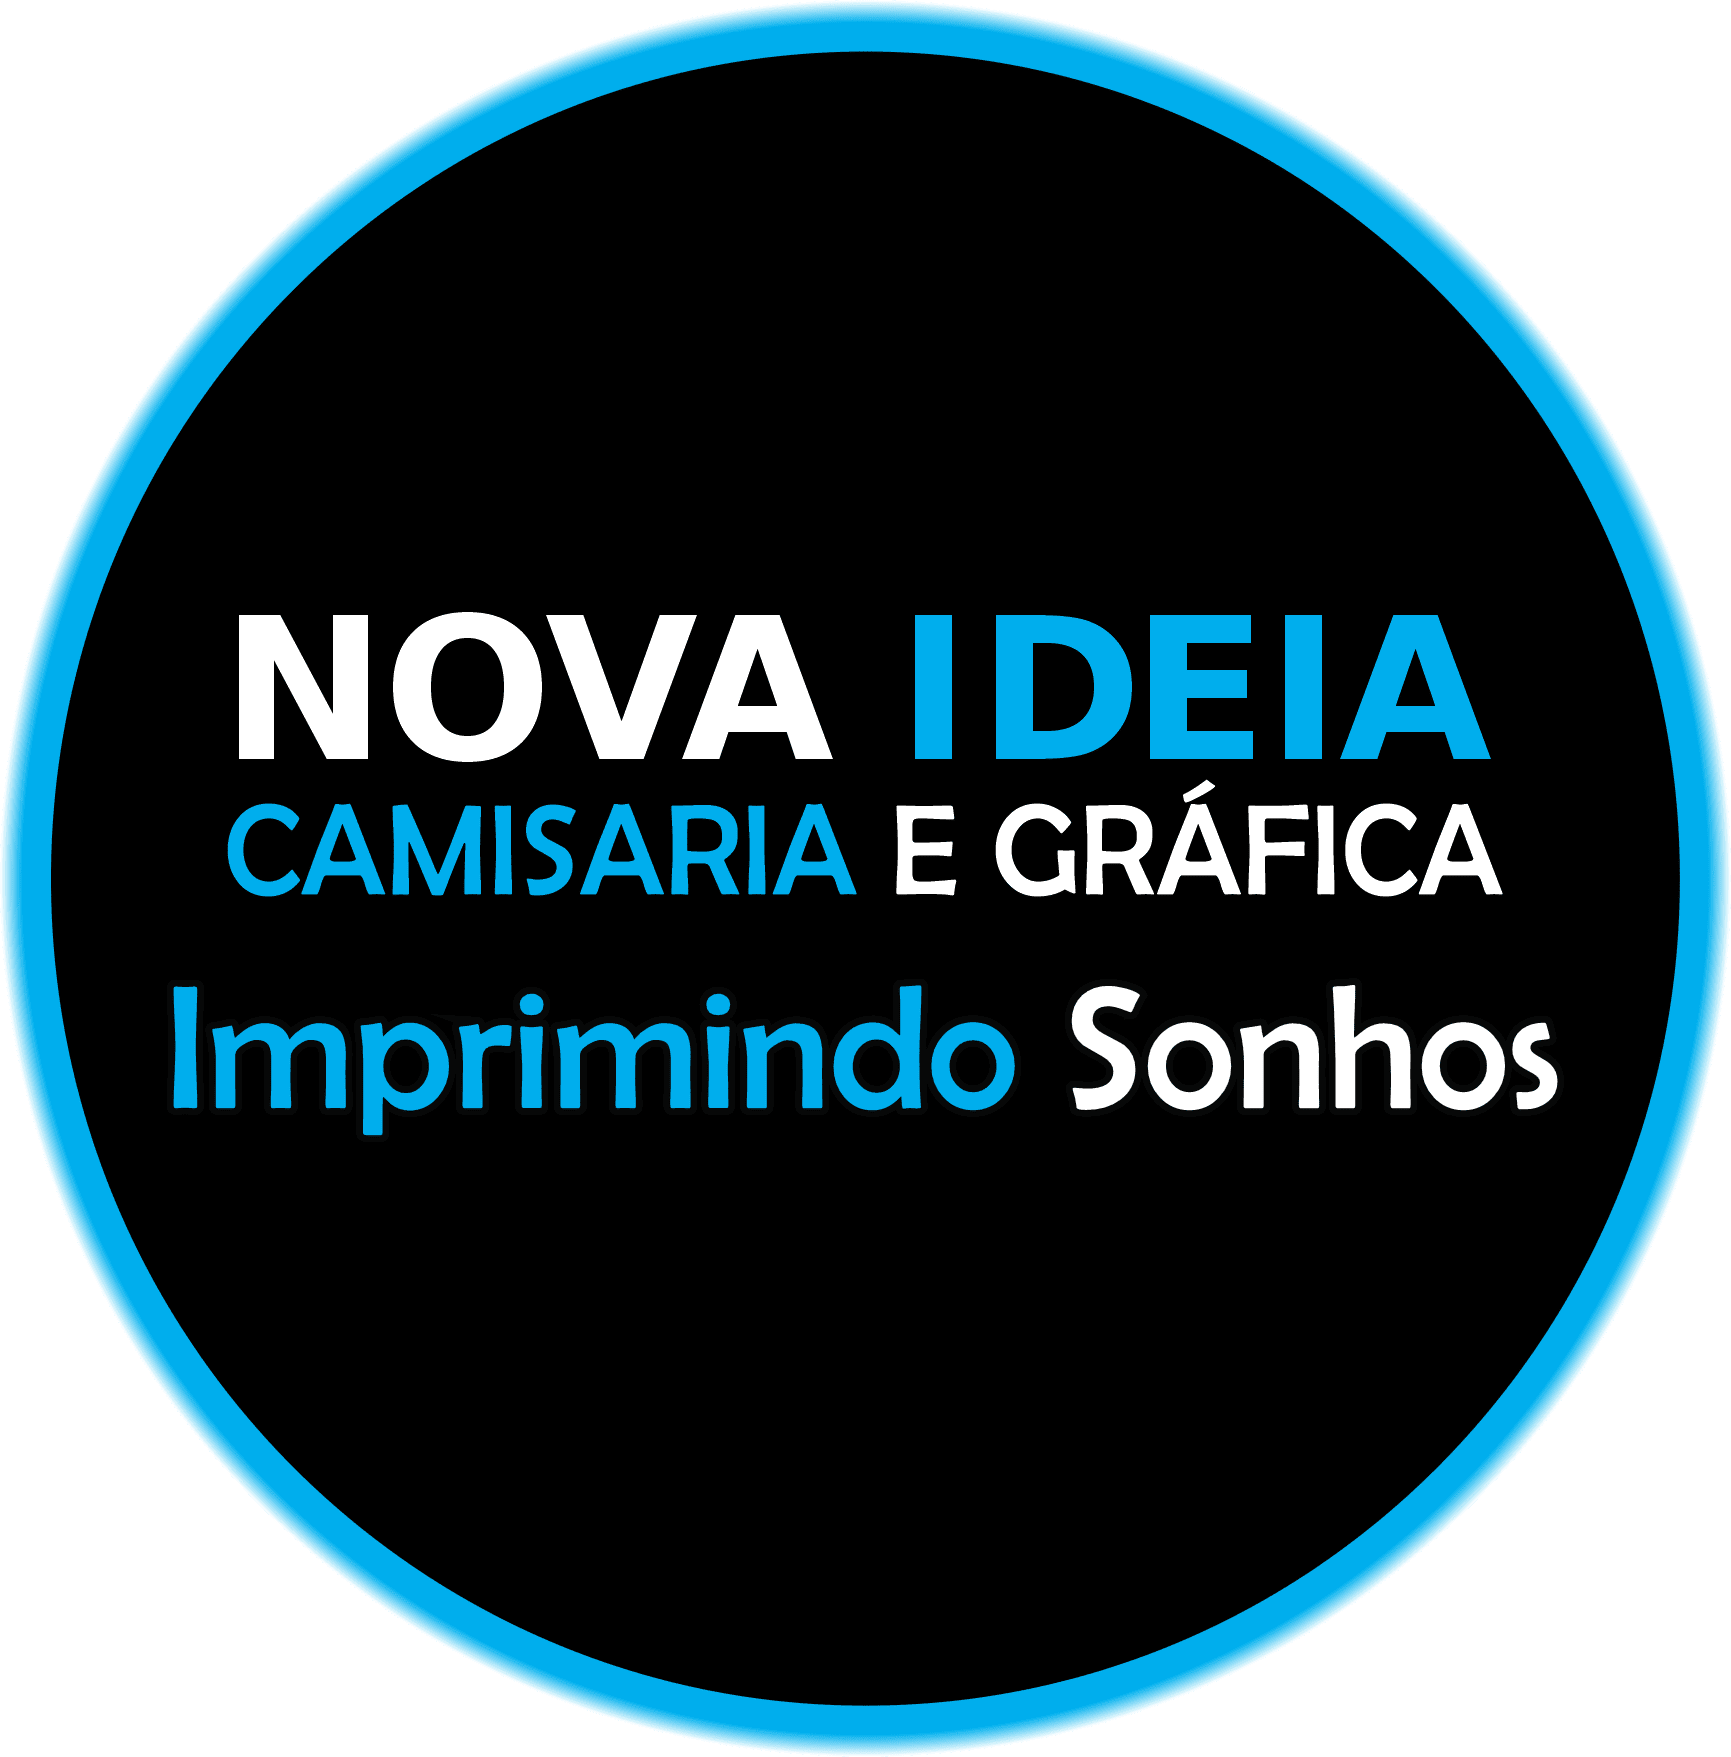 Camisaria & Gráfica Nova Ideia